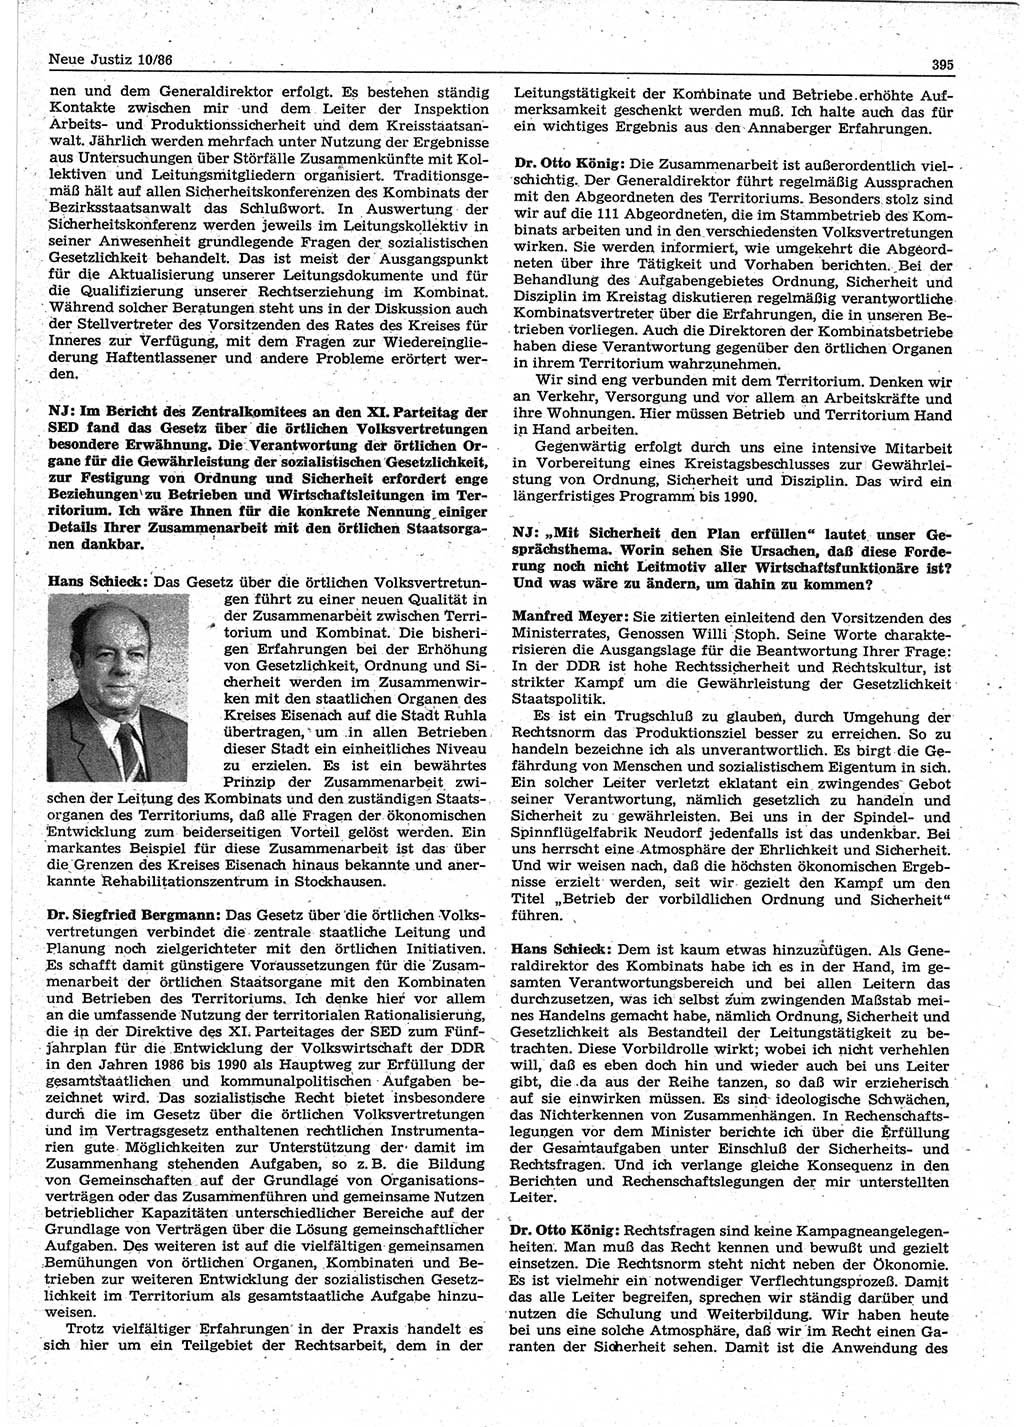 Neue Justiz (NJ), Zeitschrift für sozialistisches Recht und Gesetzlichkeit [Deutsche Demokratische Republik (DDR)], 40. Jahrgang 1986, Seite 395 (NJ DDR 1986, S. 395)